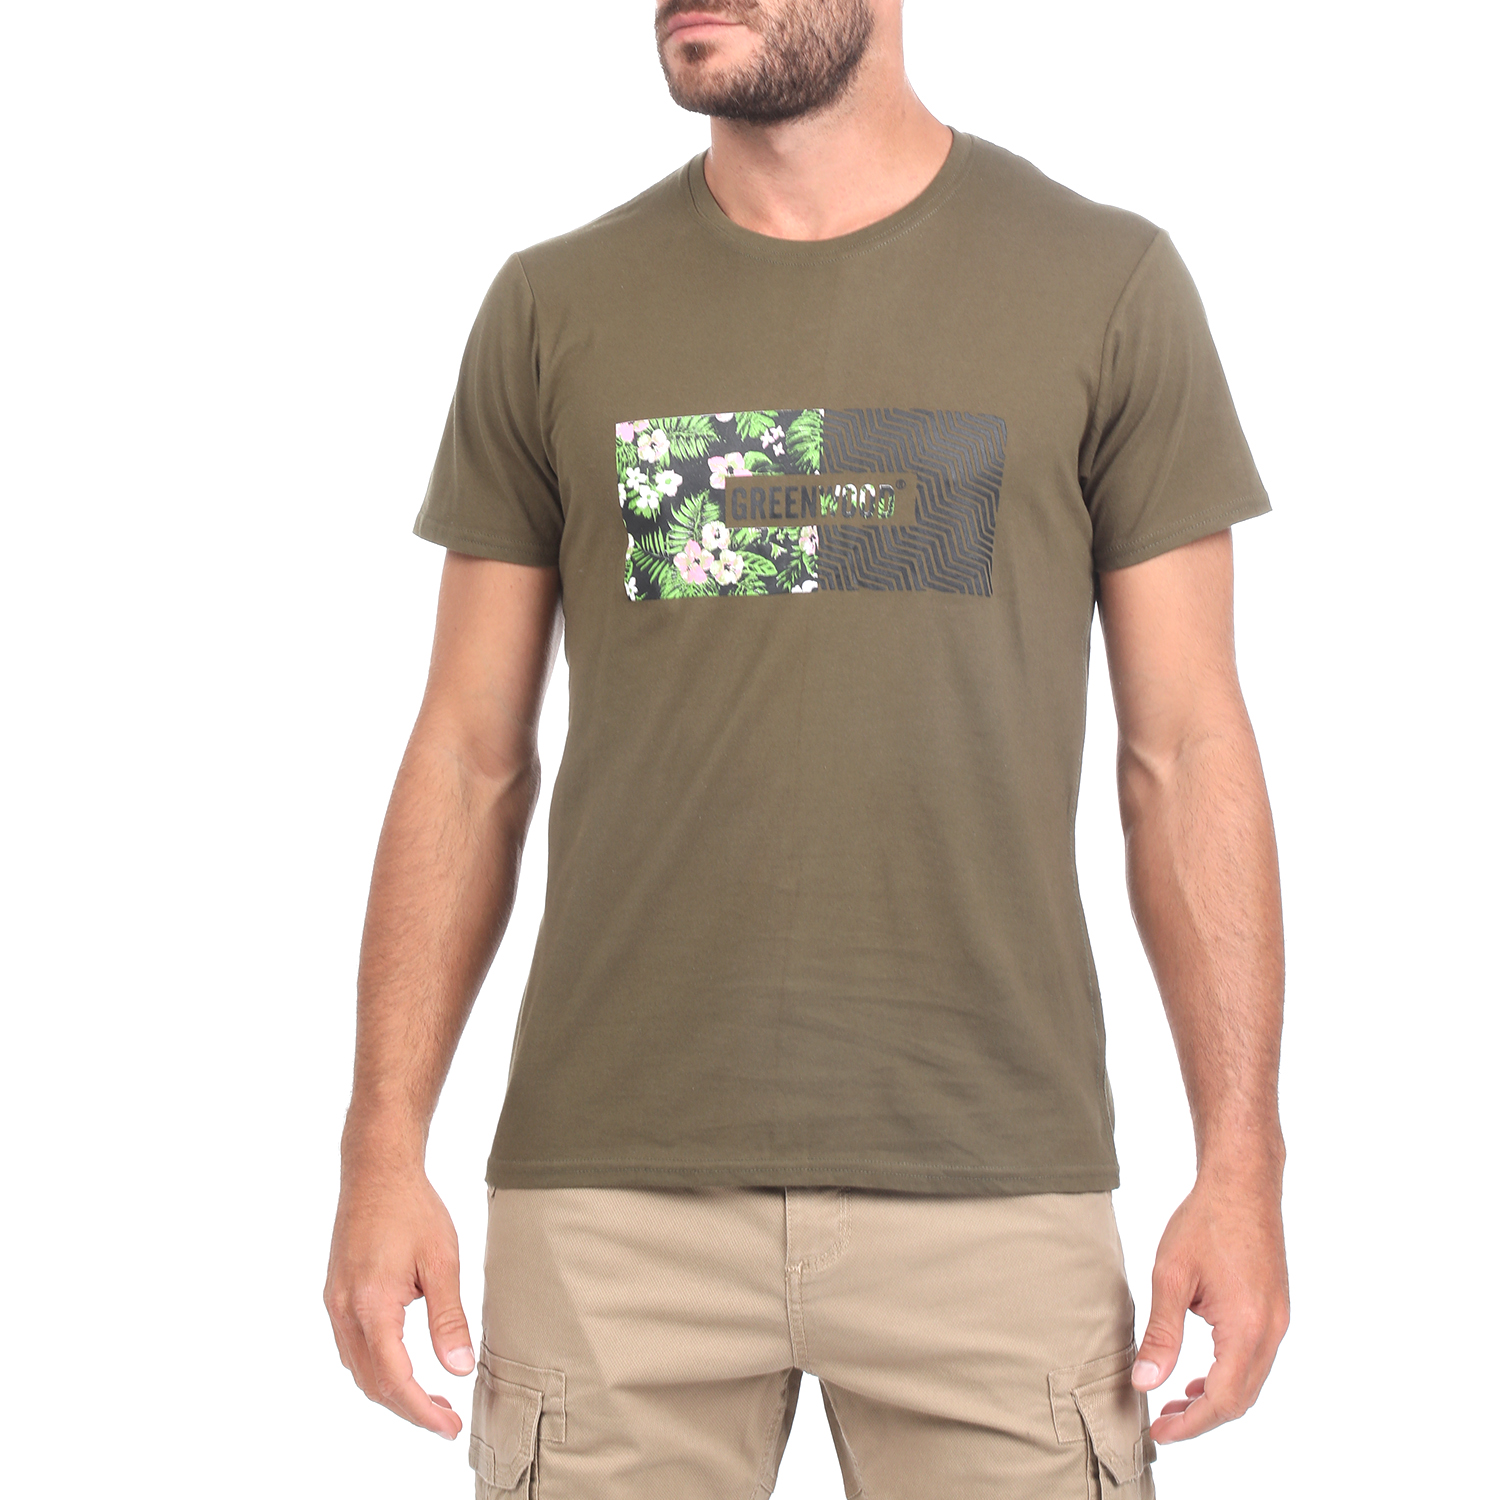 Ανδρικά/Ρούχα/Μπλούζες/Κοντομάνικες GREENWOOD - Ανδρική κοντομάνικη μπλούζα GREENWOOD χακί